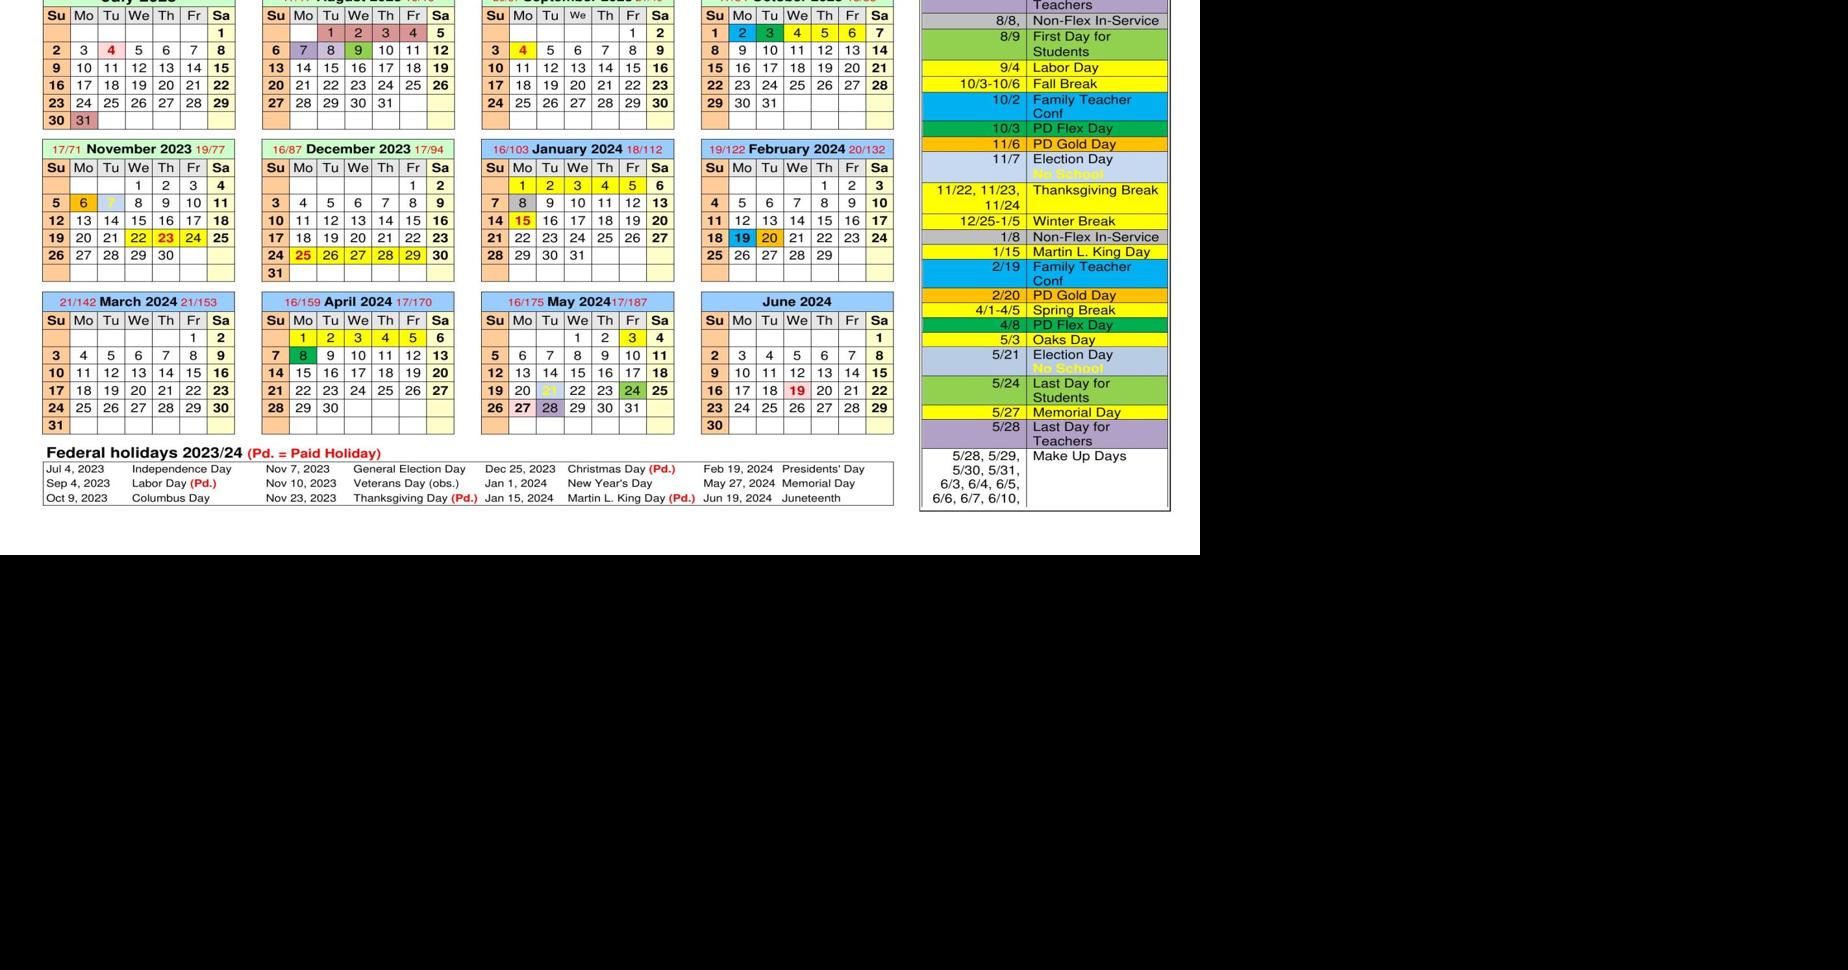 Jcps Calendar 2021-22 - Customize and Print